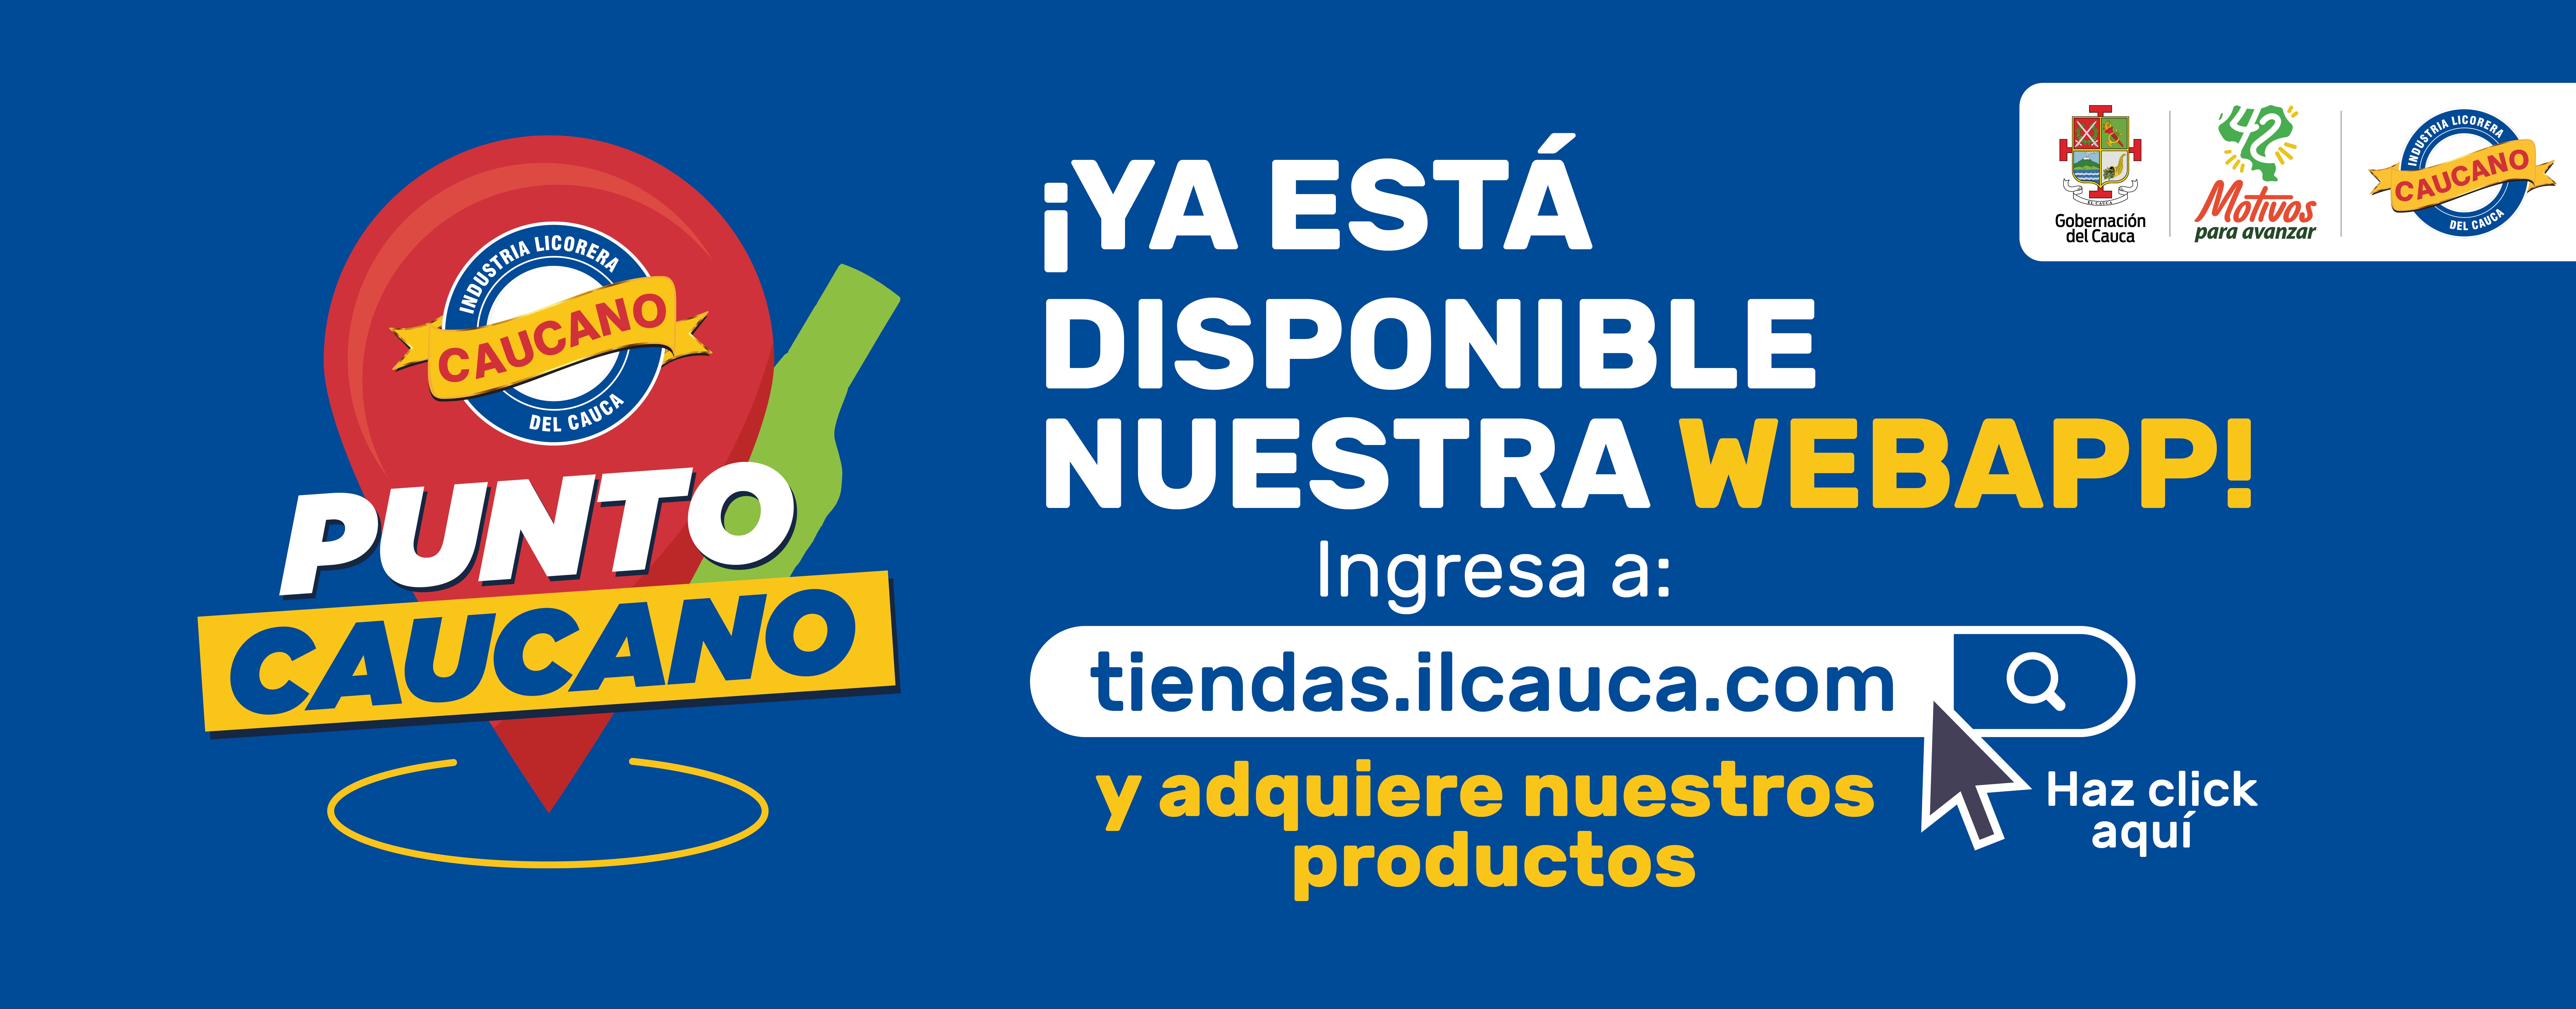                                          Conozca la nueva Web APP de la Industria Licorera del Cauca "Punto Caucano"
                                        